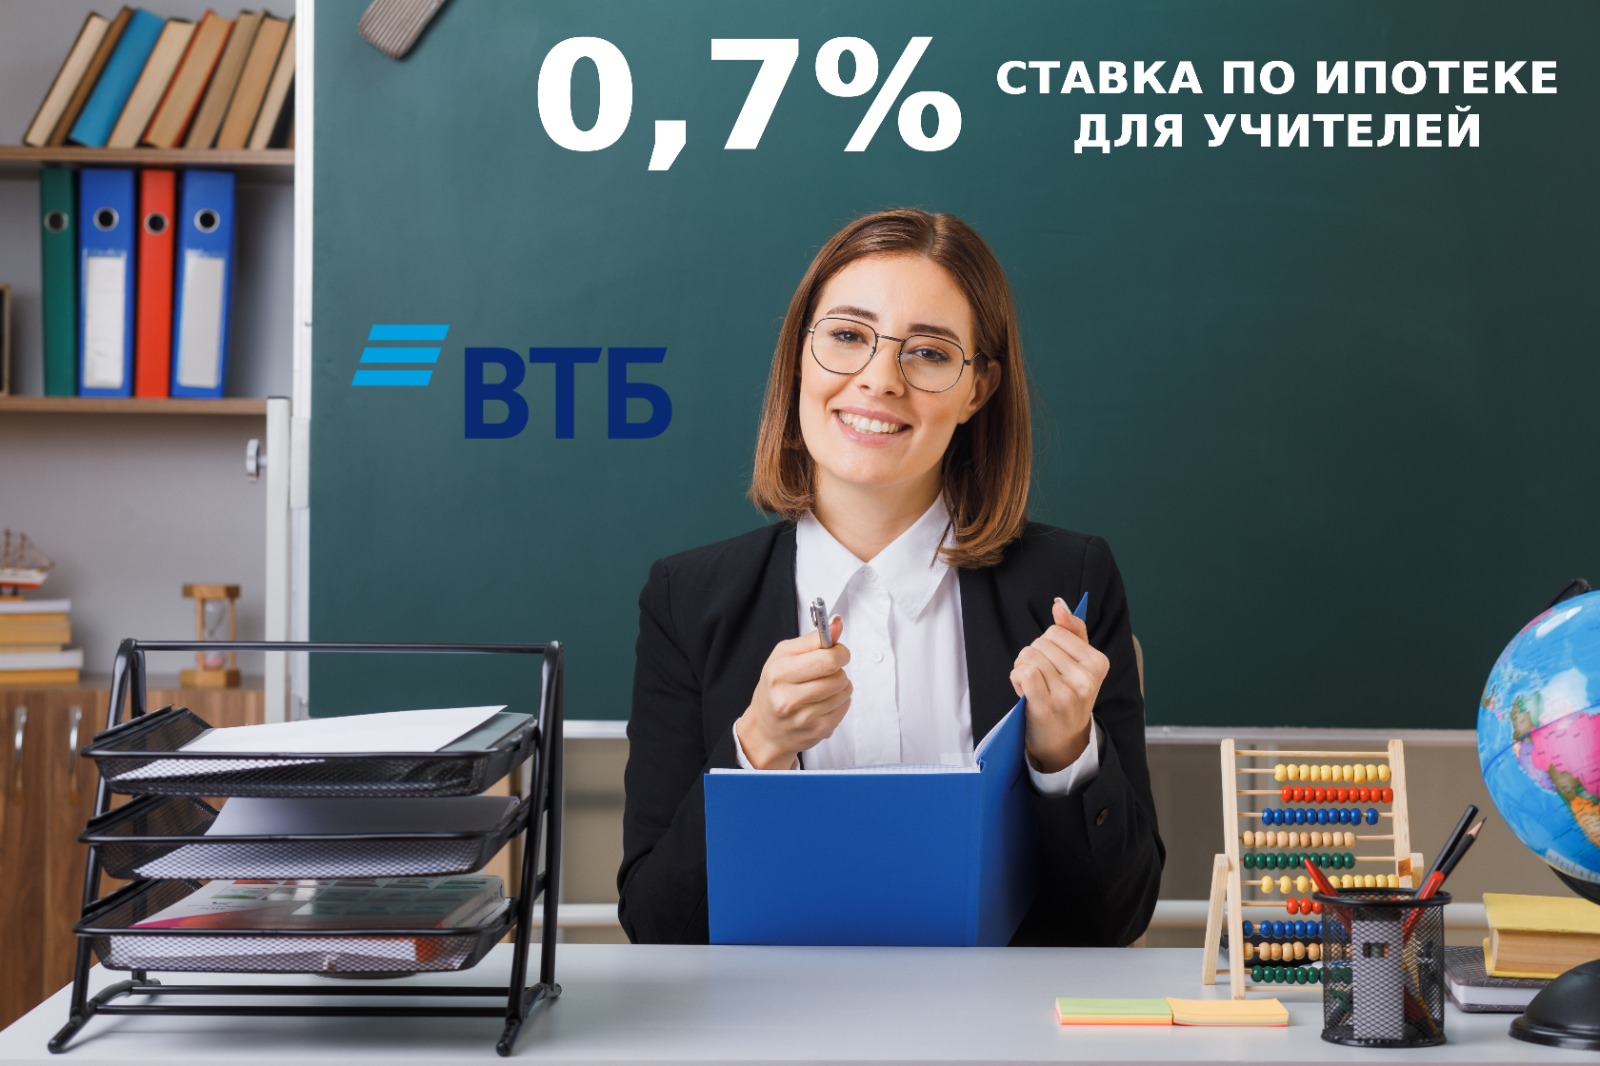 СТАВКА ДЛЯ УЧИТЕЛЕЙ 0,7%!